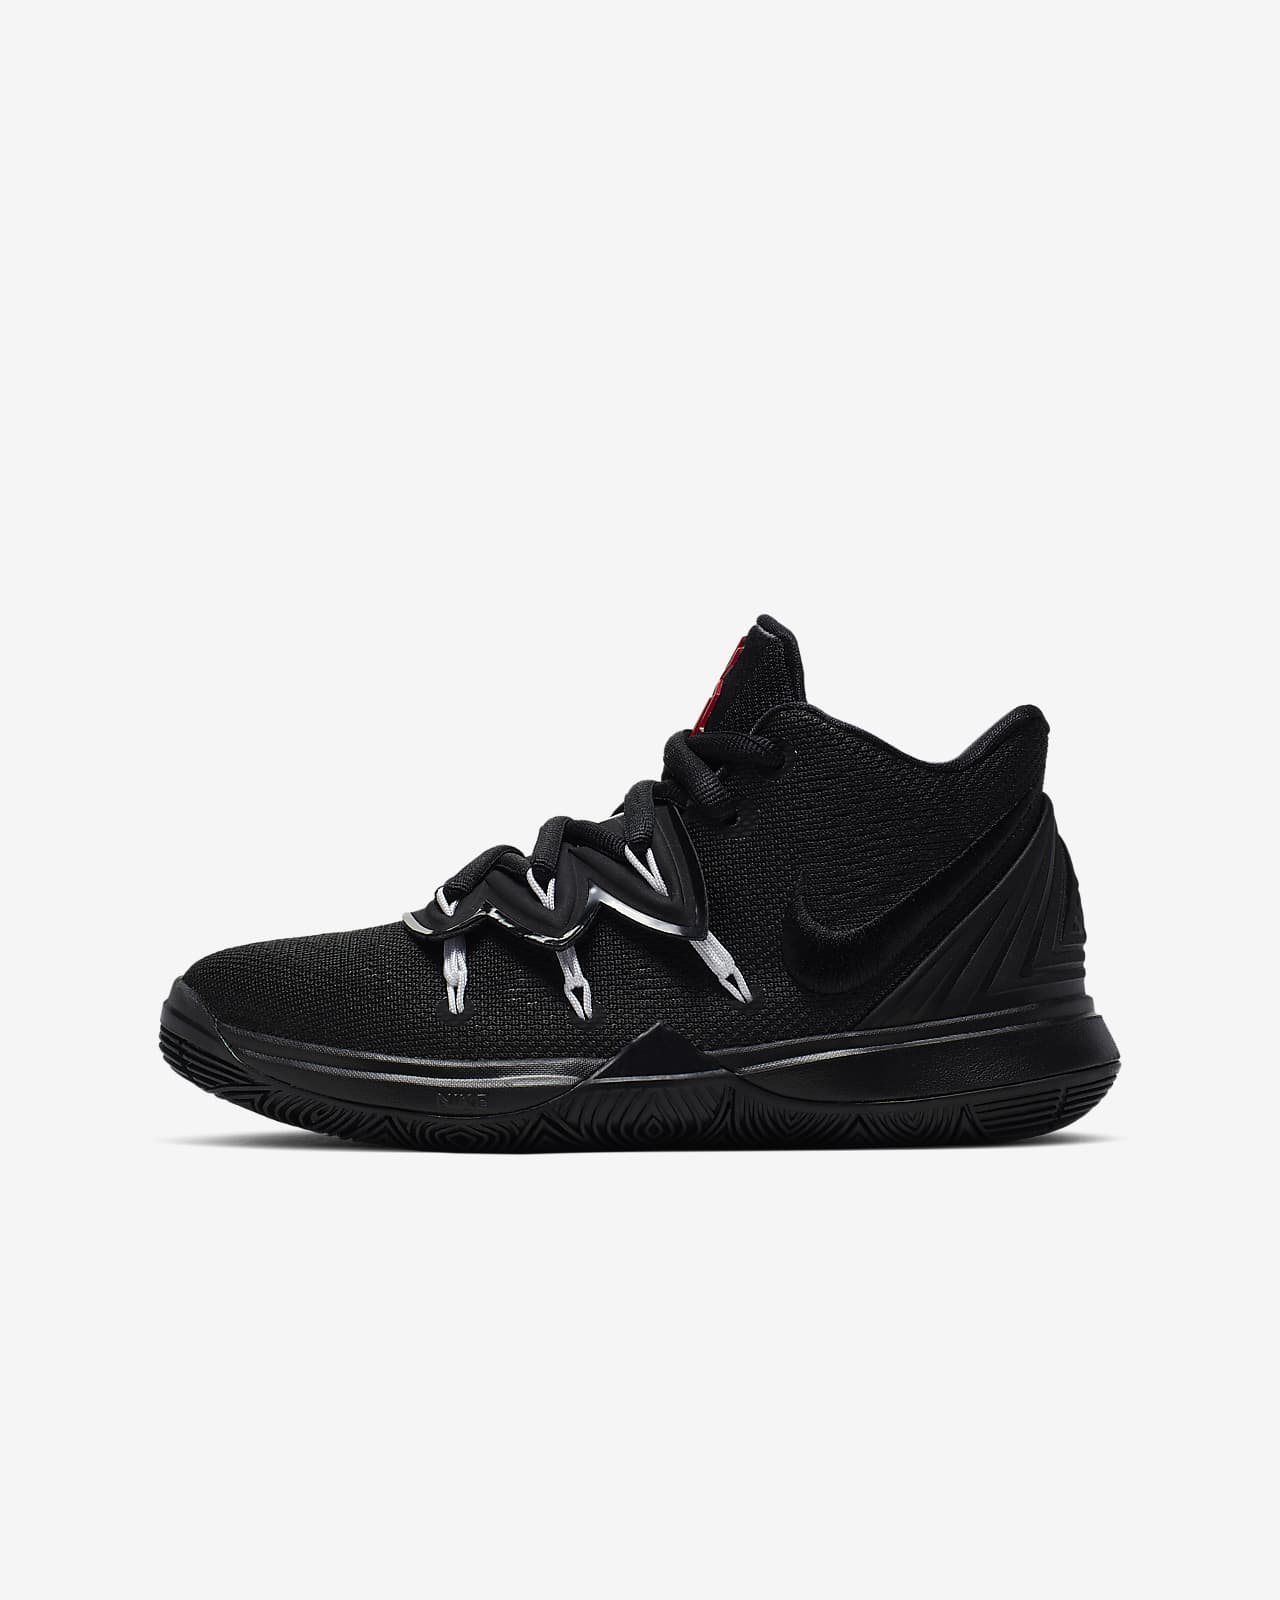 Kyrie 5 Older Kids' Shoe. Nike ID